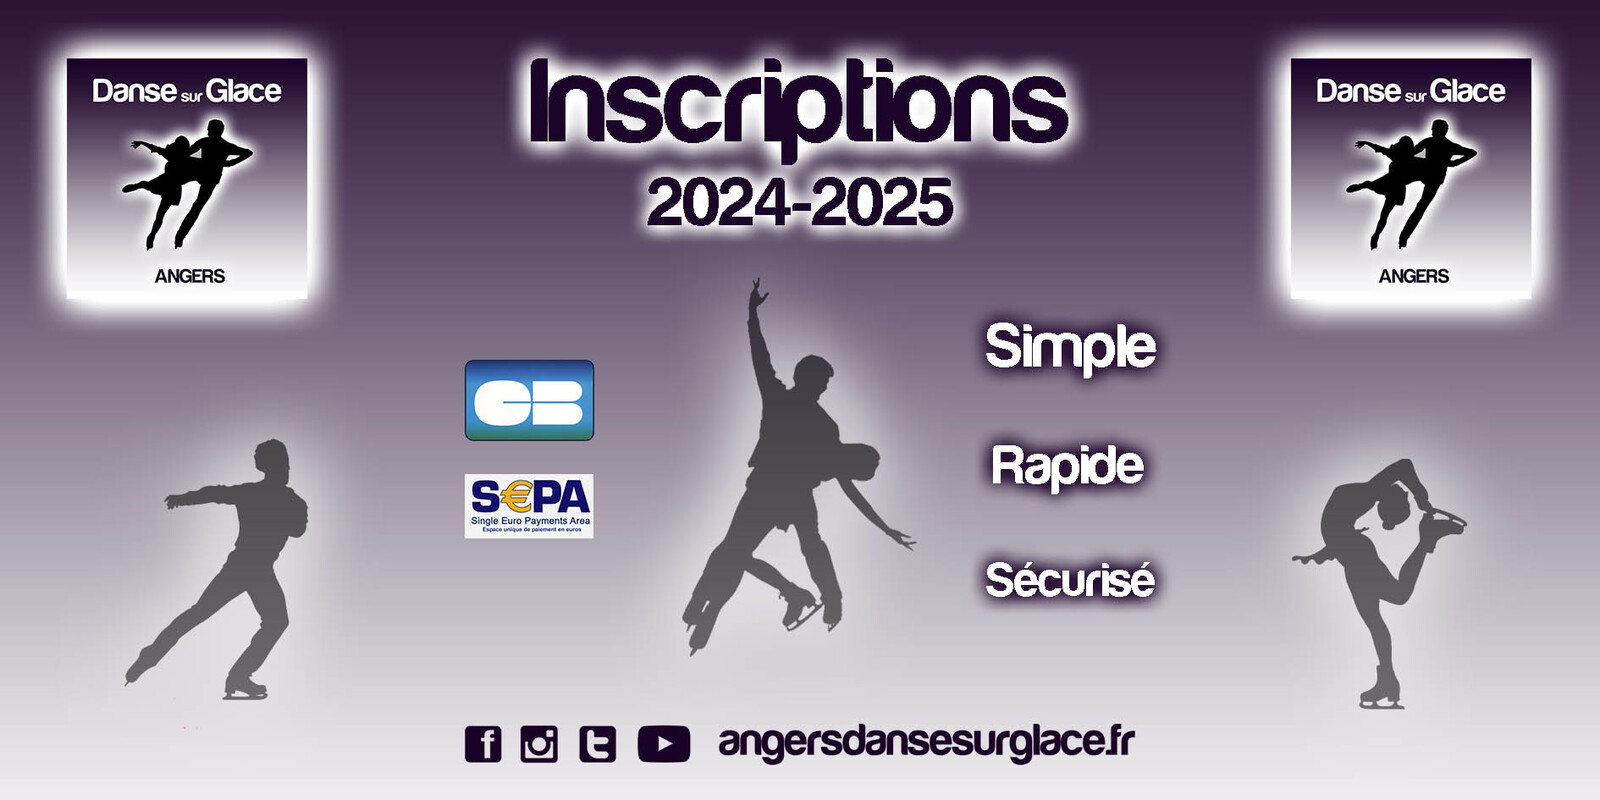 INSCRIPTIONS 2024-2025, C'EST PARTI !